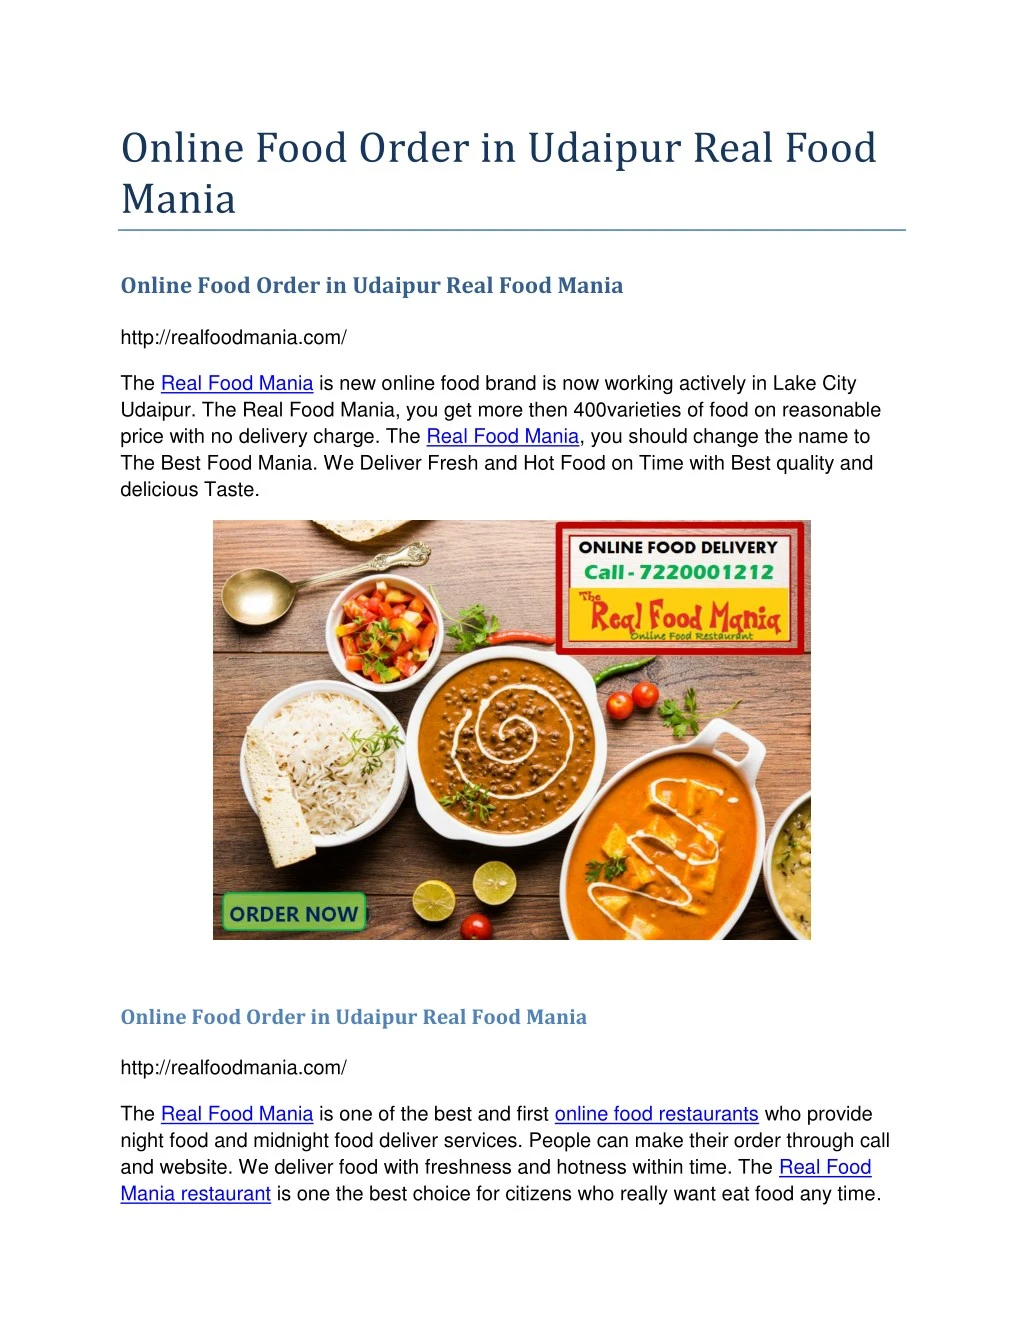 online food order in udaipur real food mania